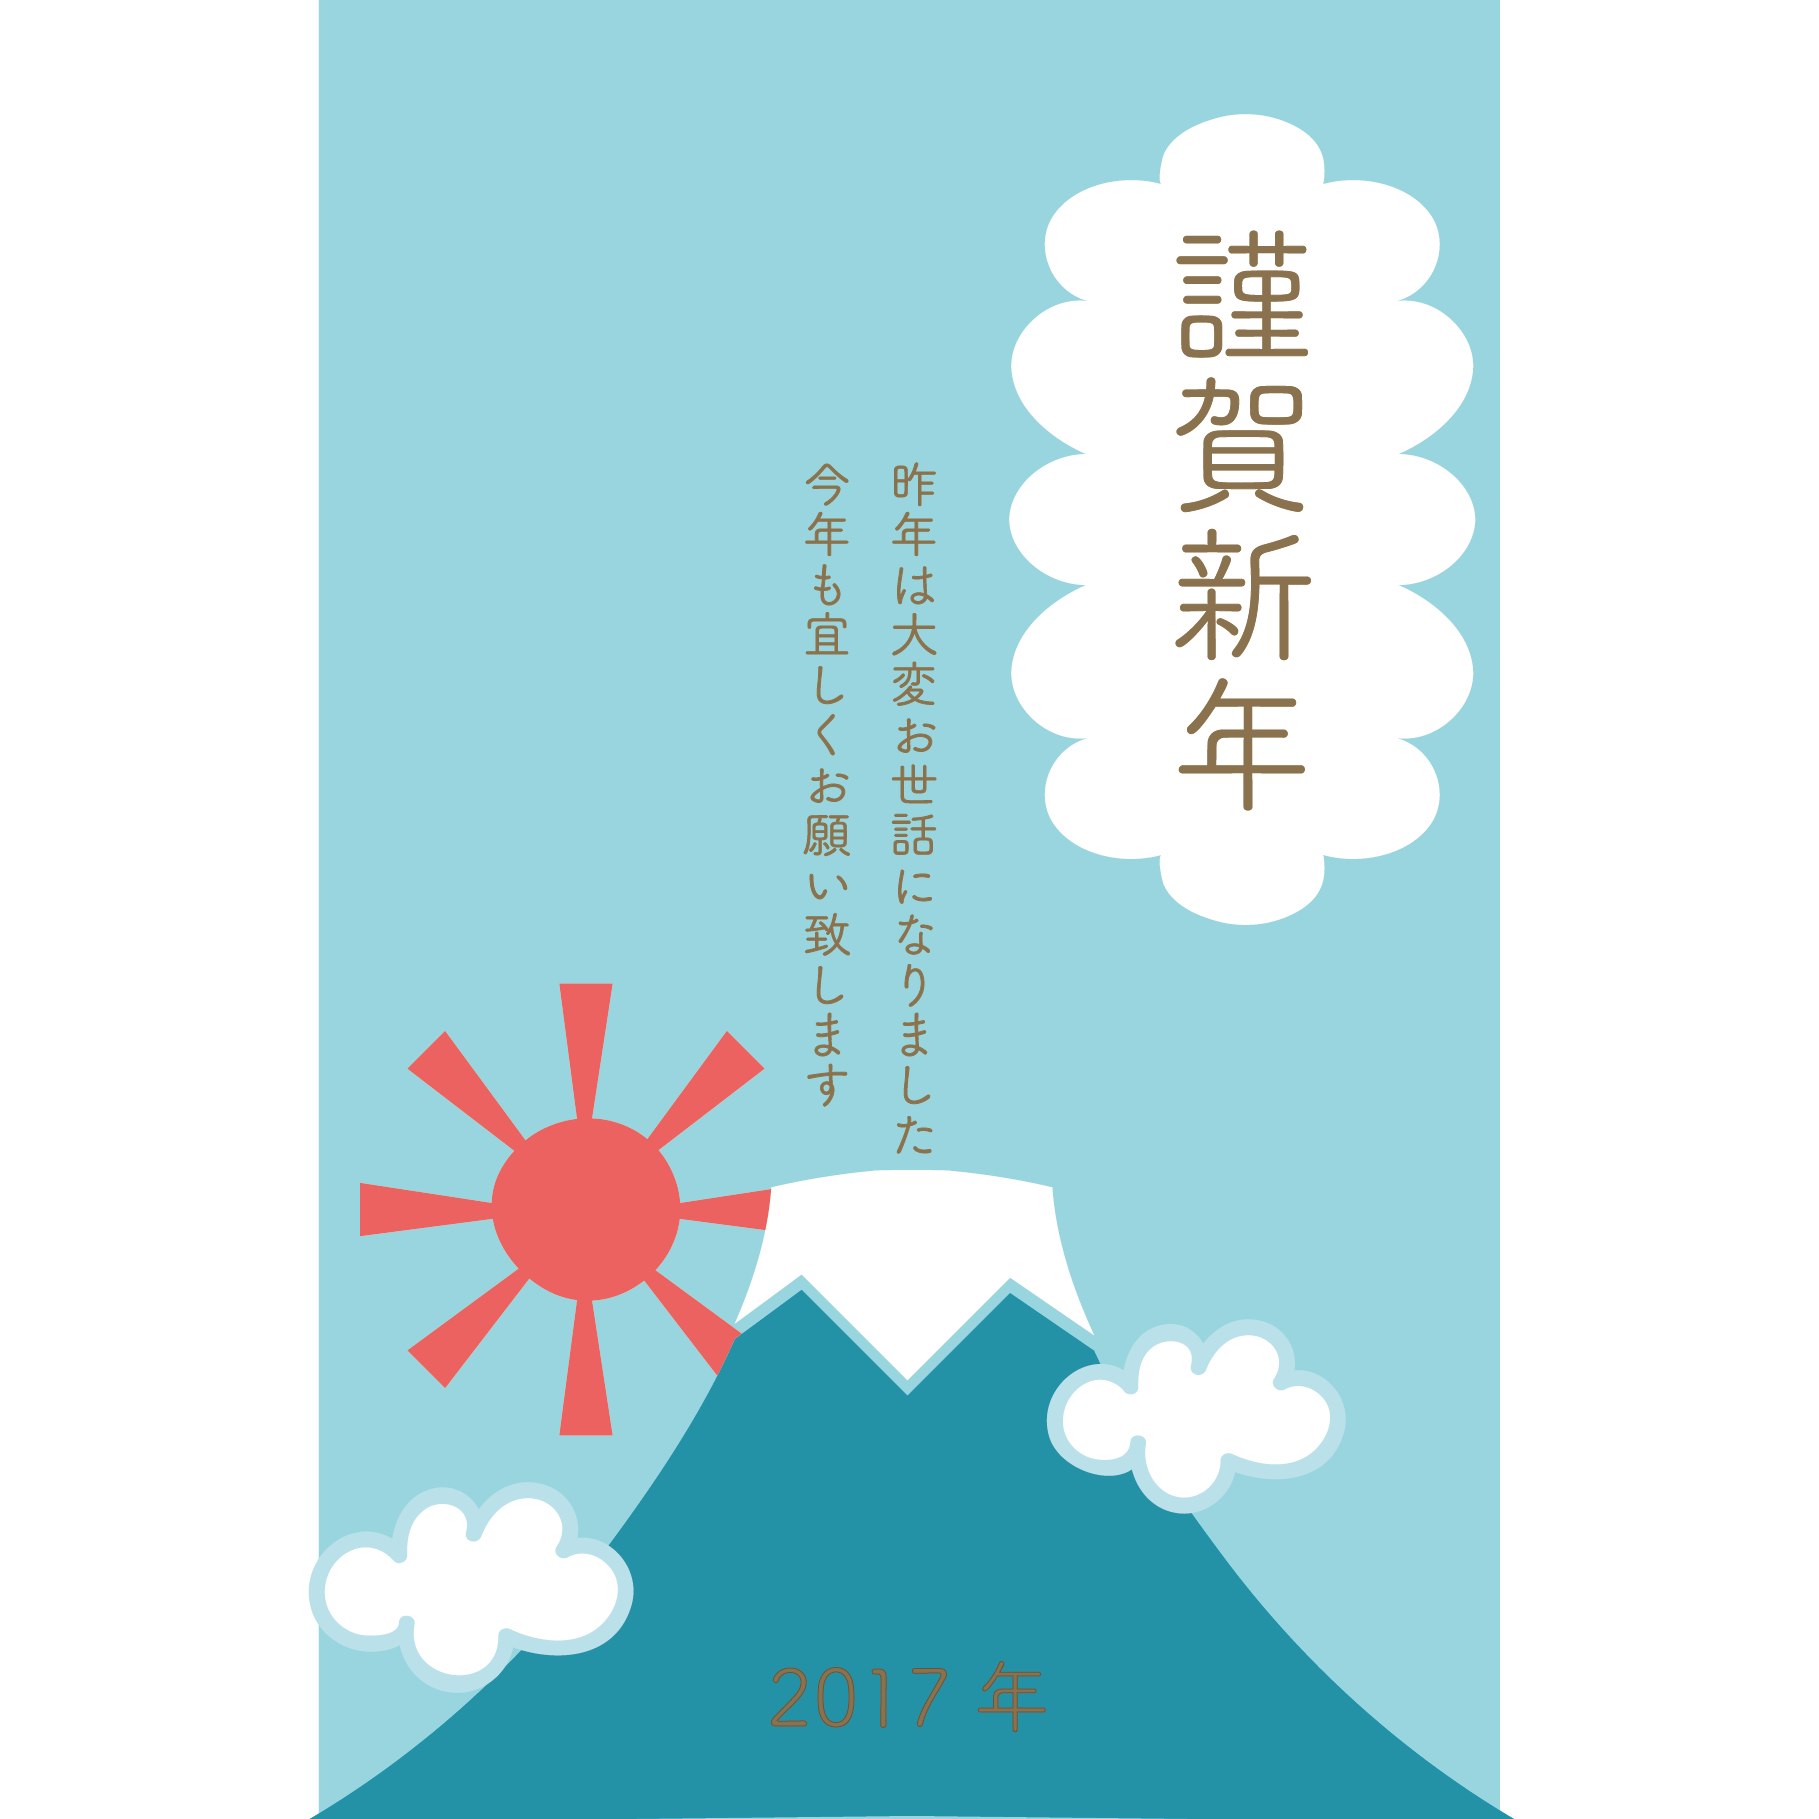 2017年 年賀状 お天気富士山あっぱれ 初日の出のイラスト 縦